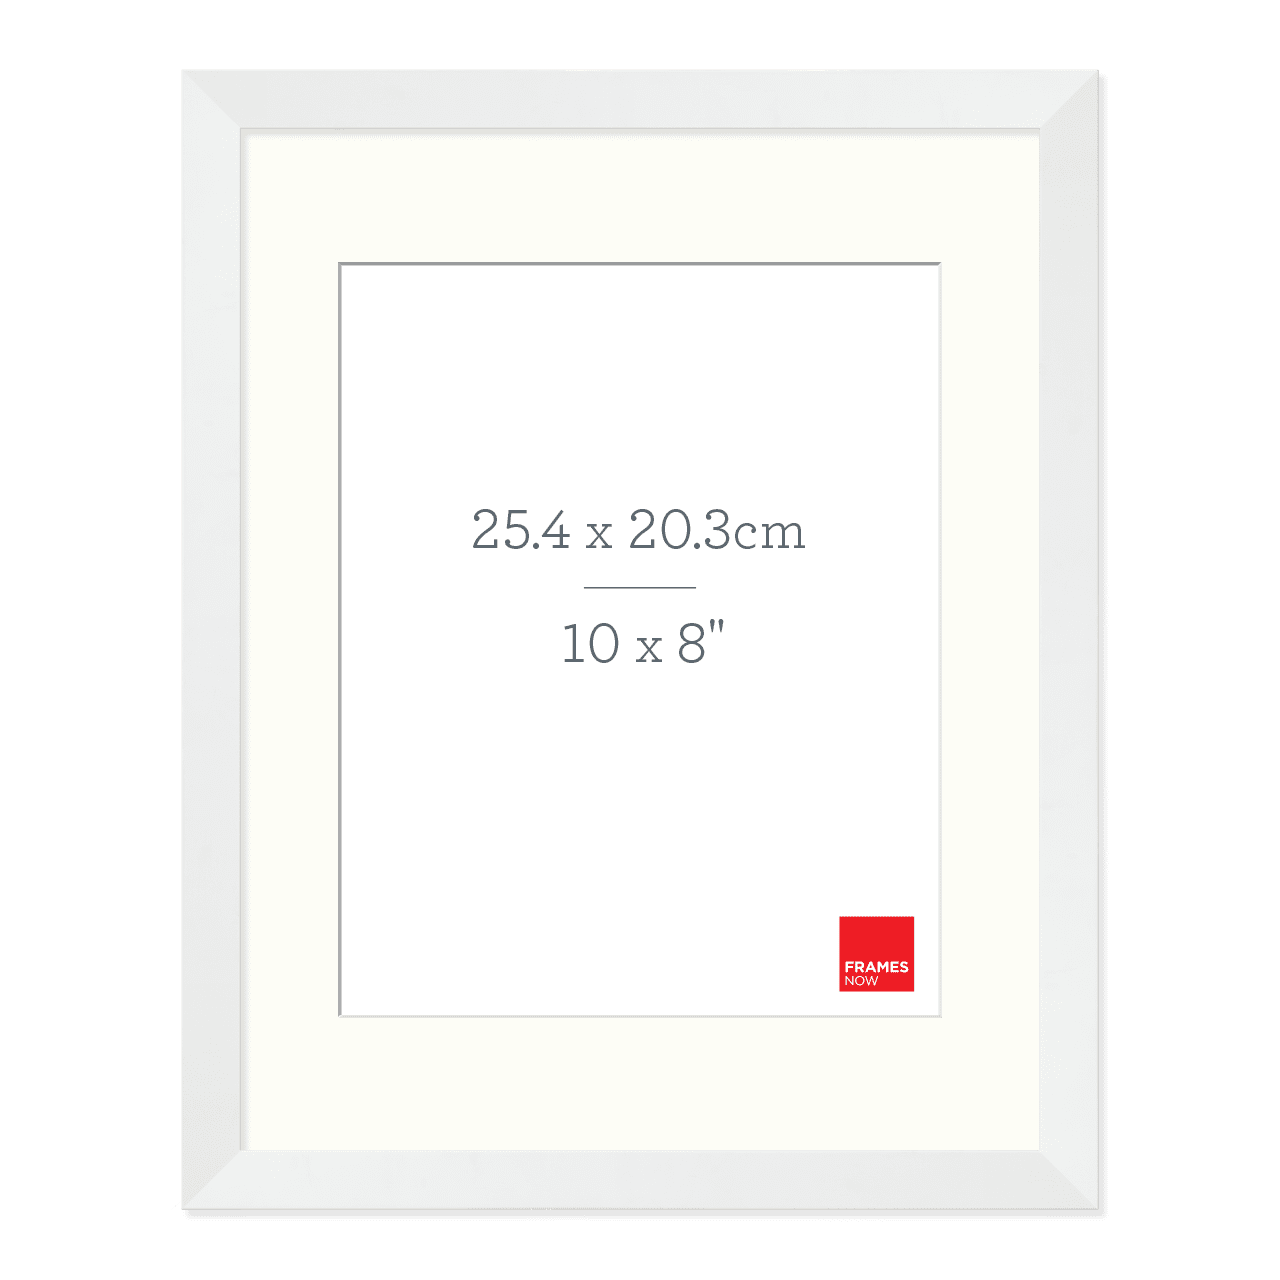 Premium Matte White Box Picture Frame with Matboard for 25.4 x 20.3cm Artwork